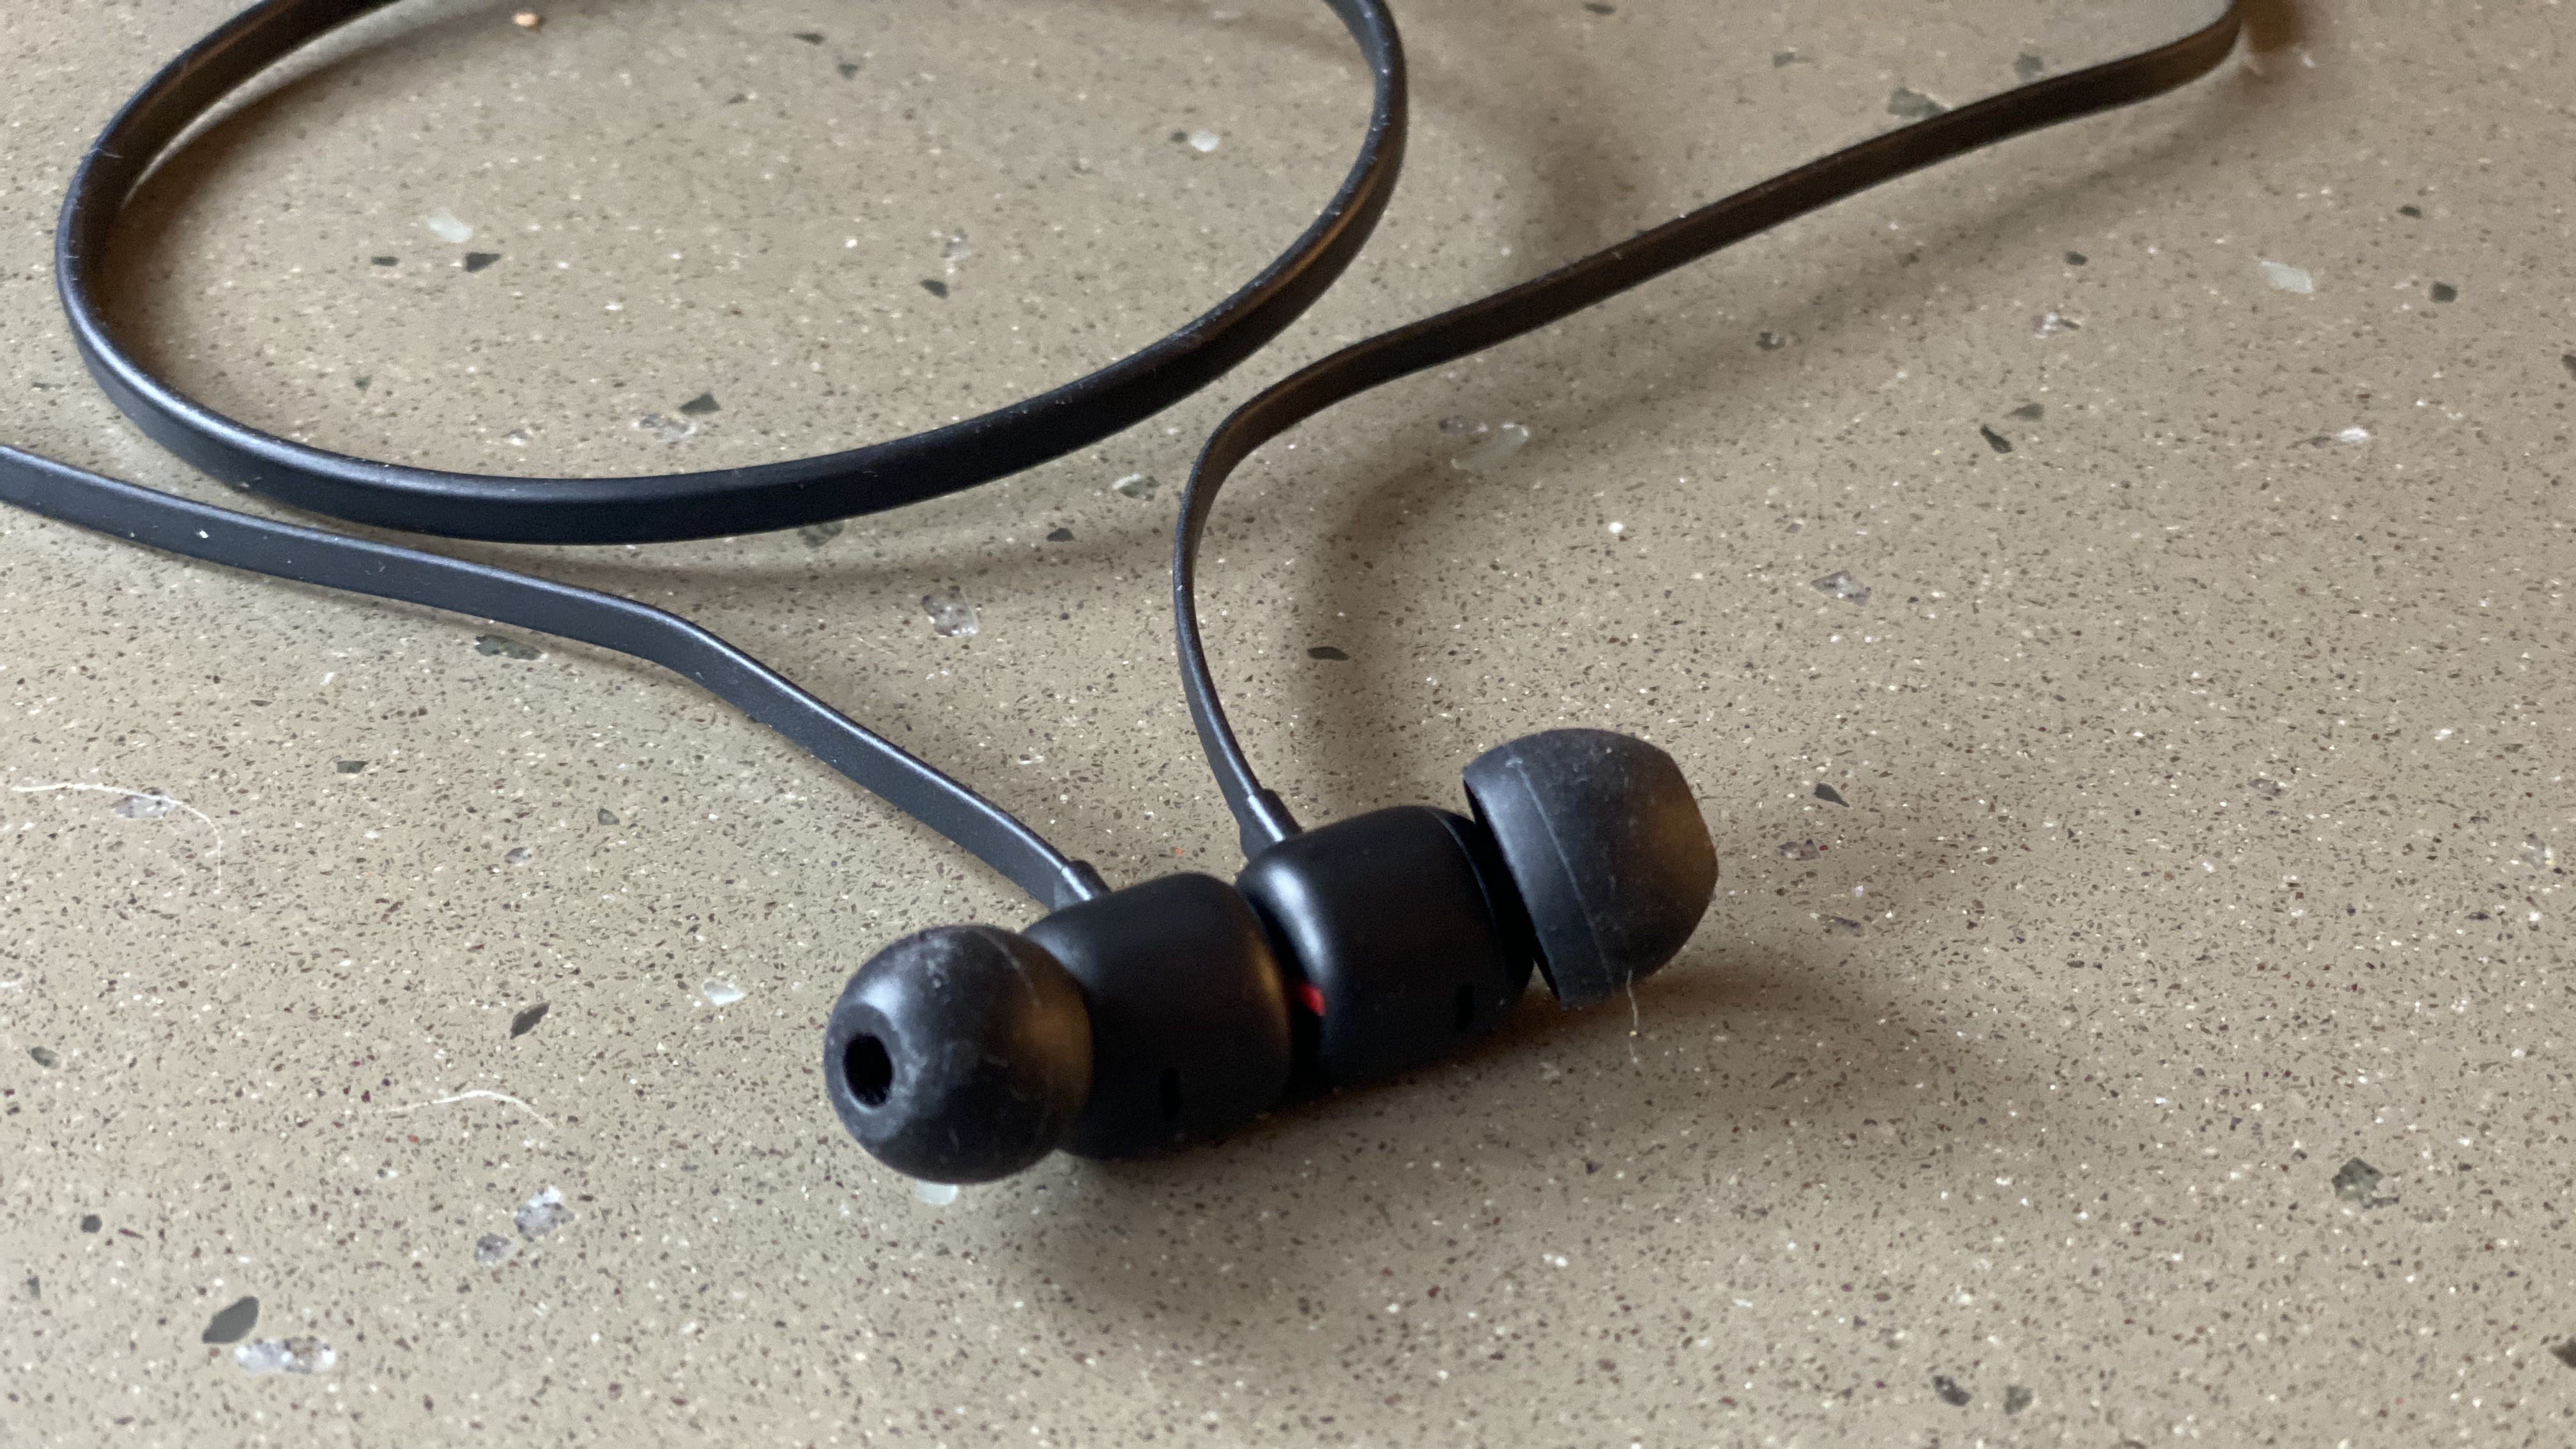 Tampilan dekat earbud earphone nirkabel Beats Flex berwarna hitam di atas permukaan marmer